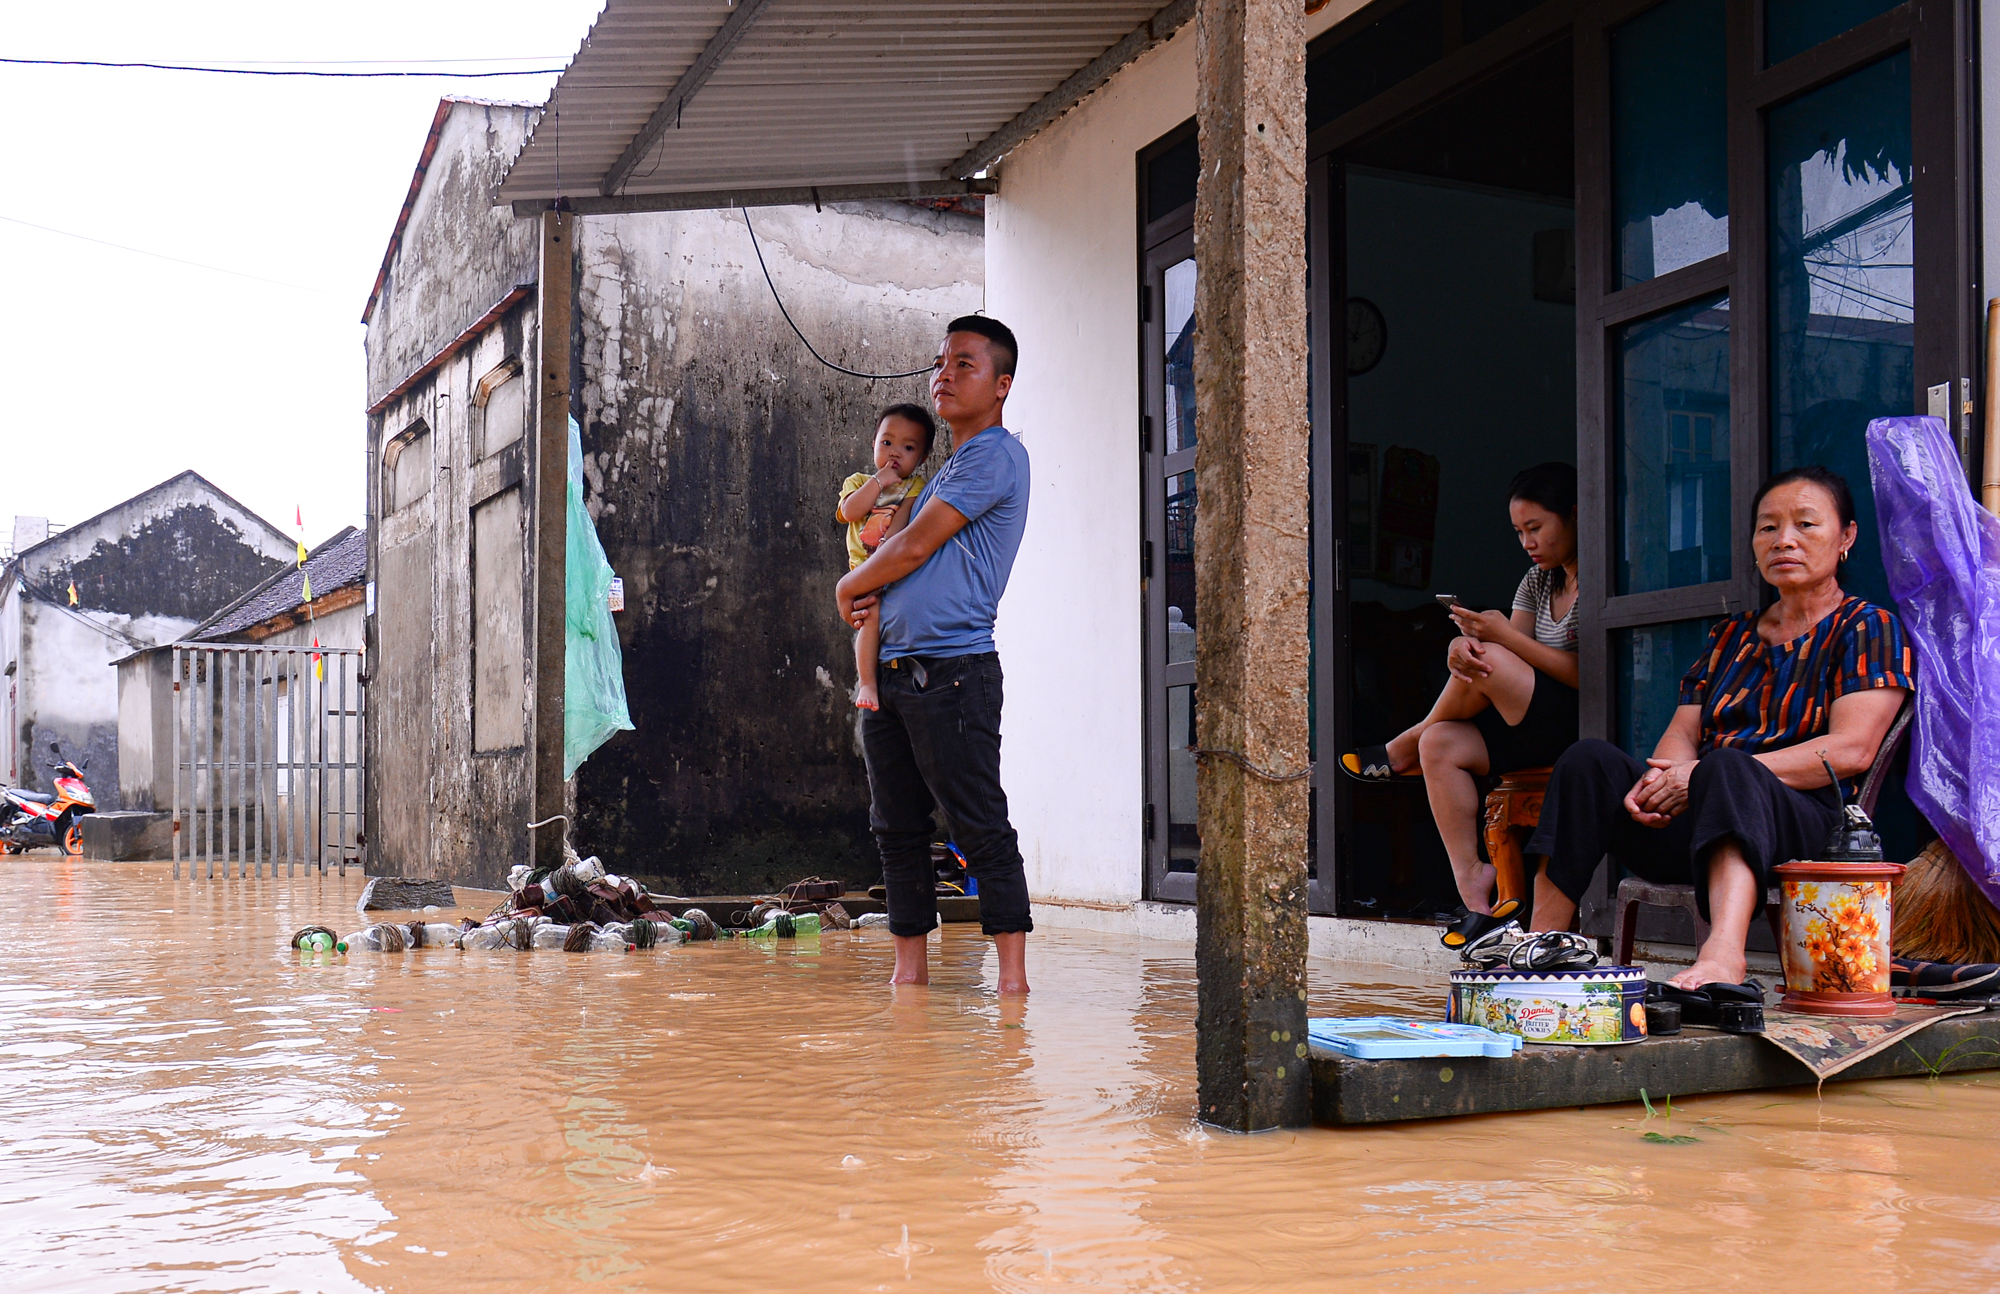 Người dân ngoại thành Hà Nội bì bõm trong nước lũ sau cơn mưa lớn: &quot;Nước lũ lên nhanh quá, chúng tôi chạy đồ không kịp&quot; - Ảnh 7.